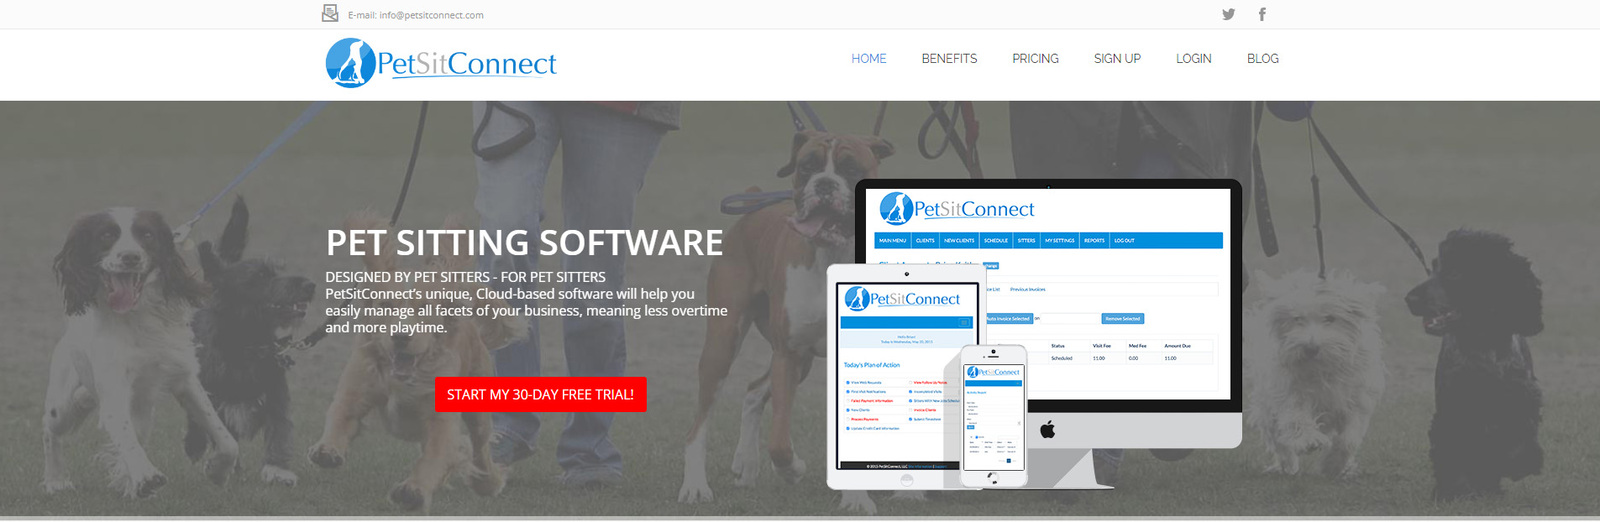 Снимок PetSitConnect, популярного приложения для присмотра за домашними животными.